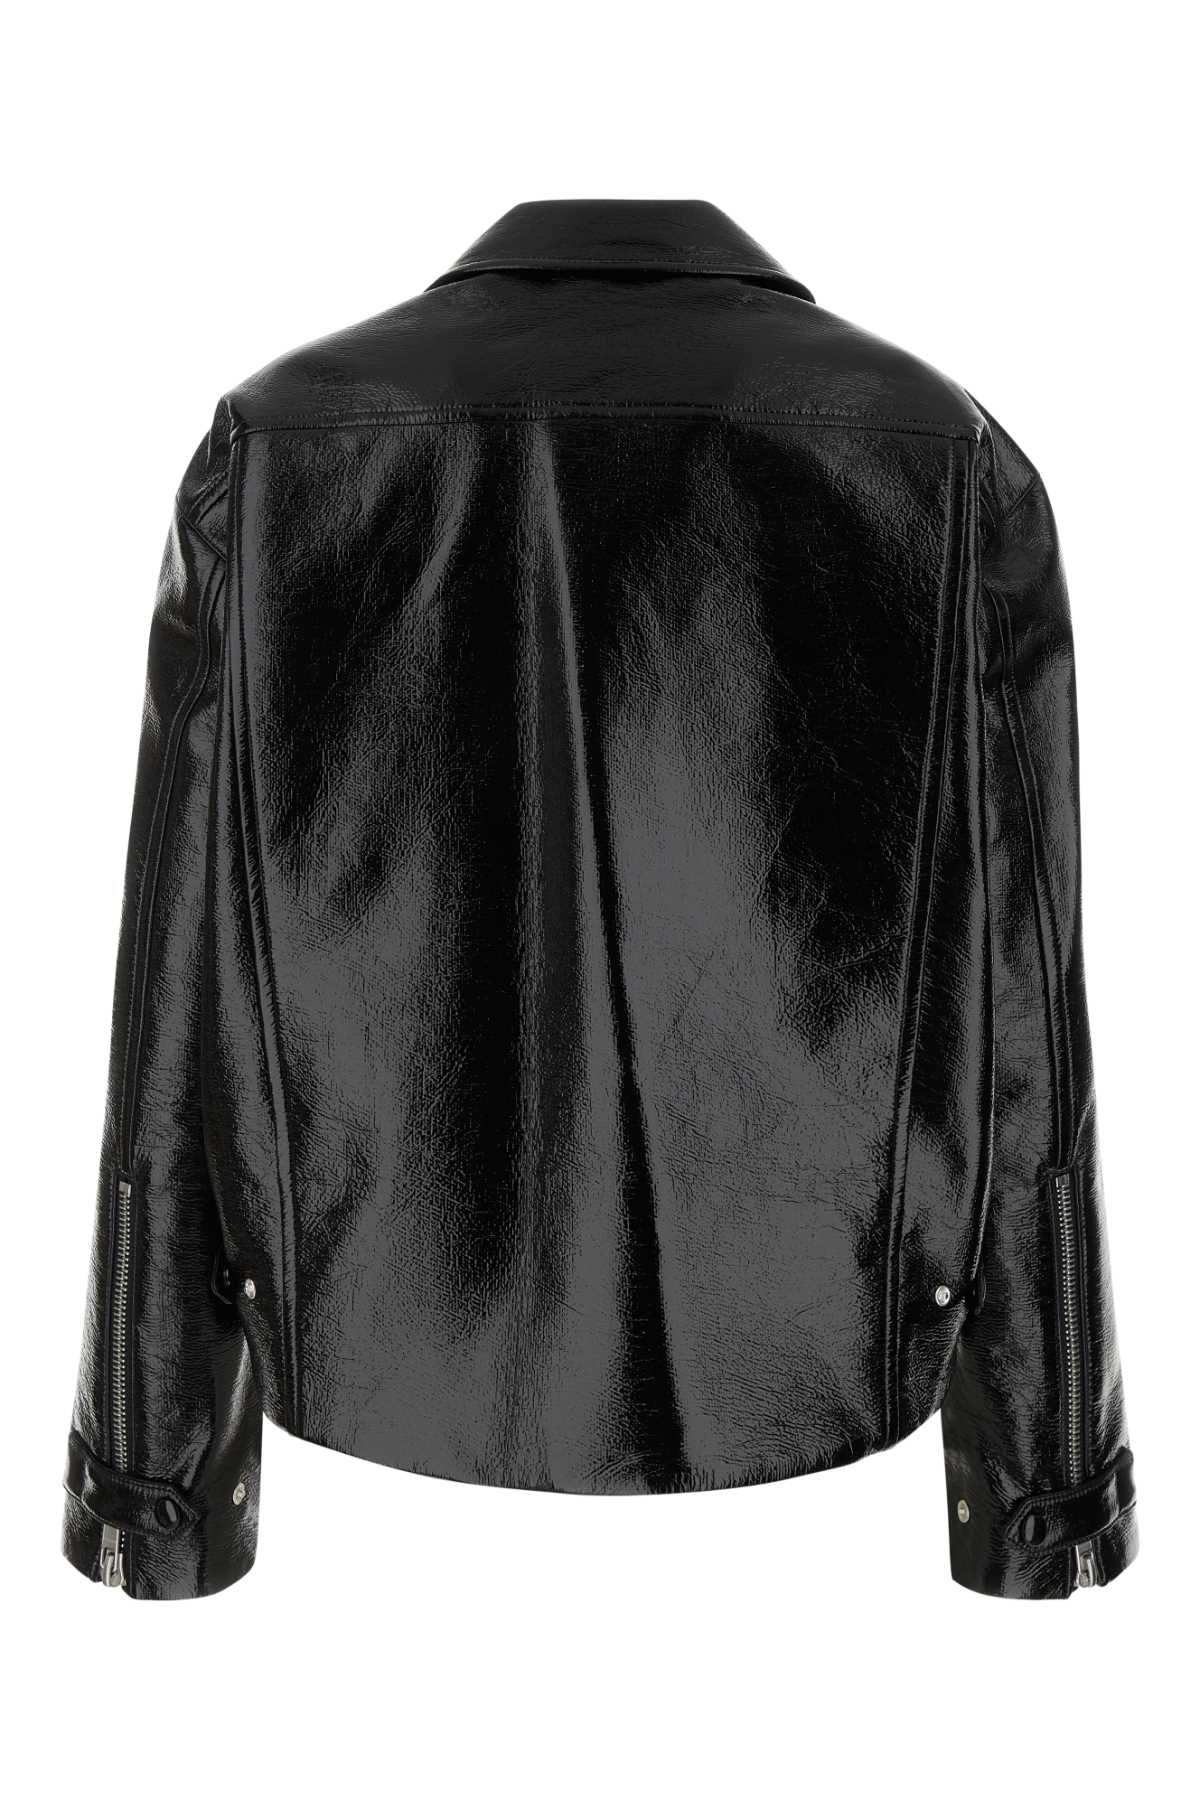 Shop Courrèges Black Vinyl Oversize Jacket